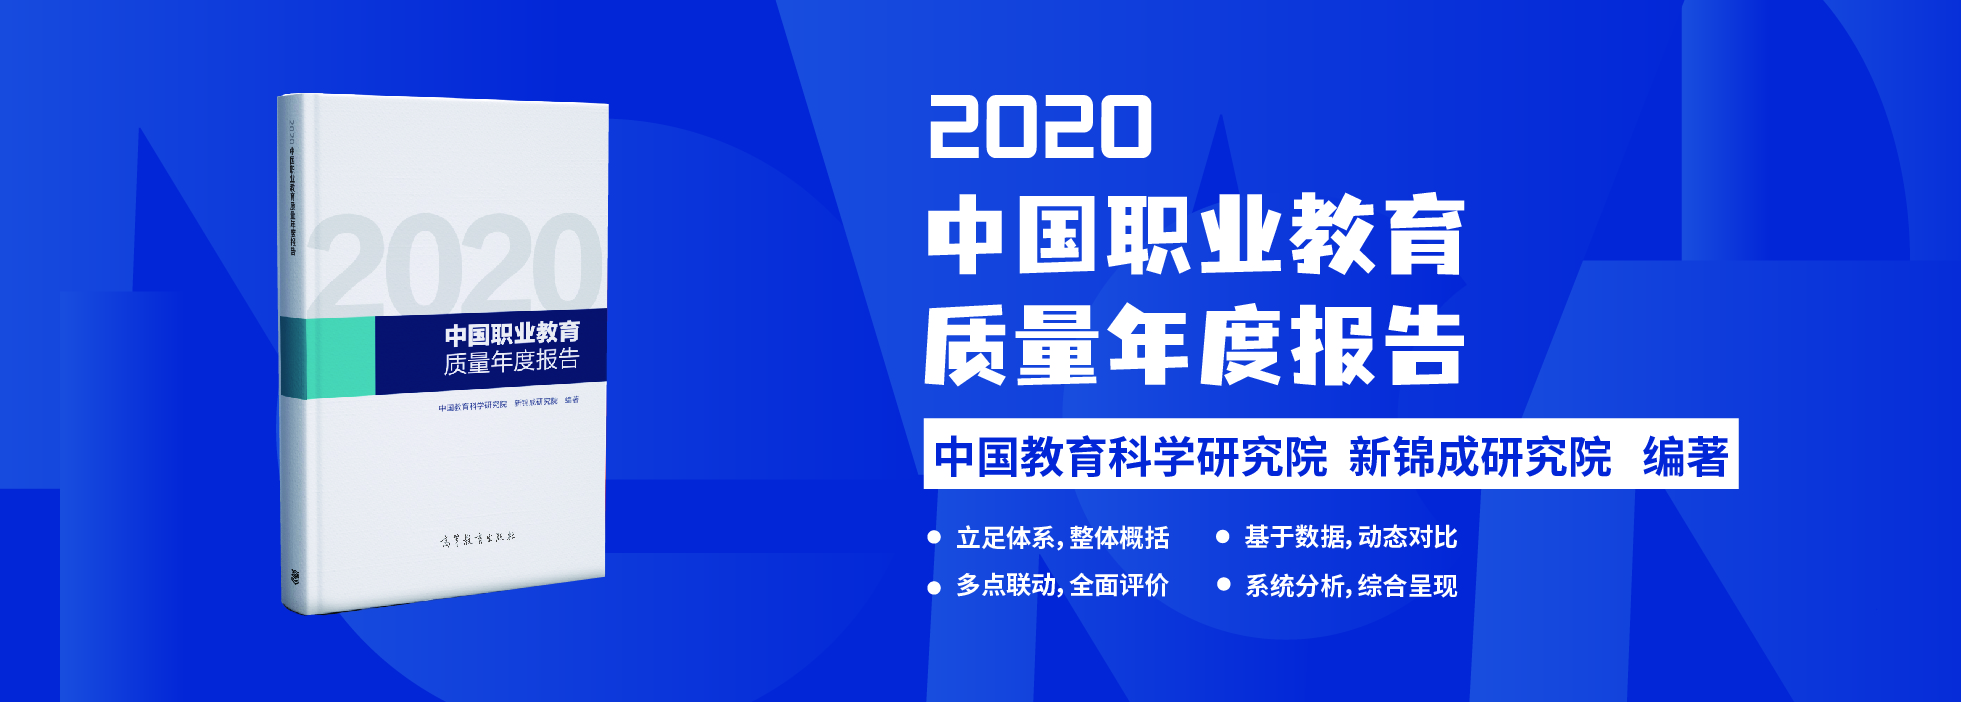 2020中国教育质量年报